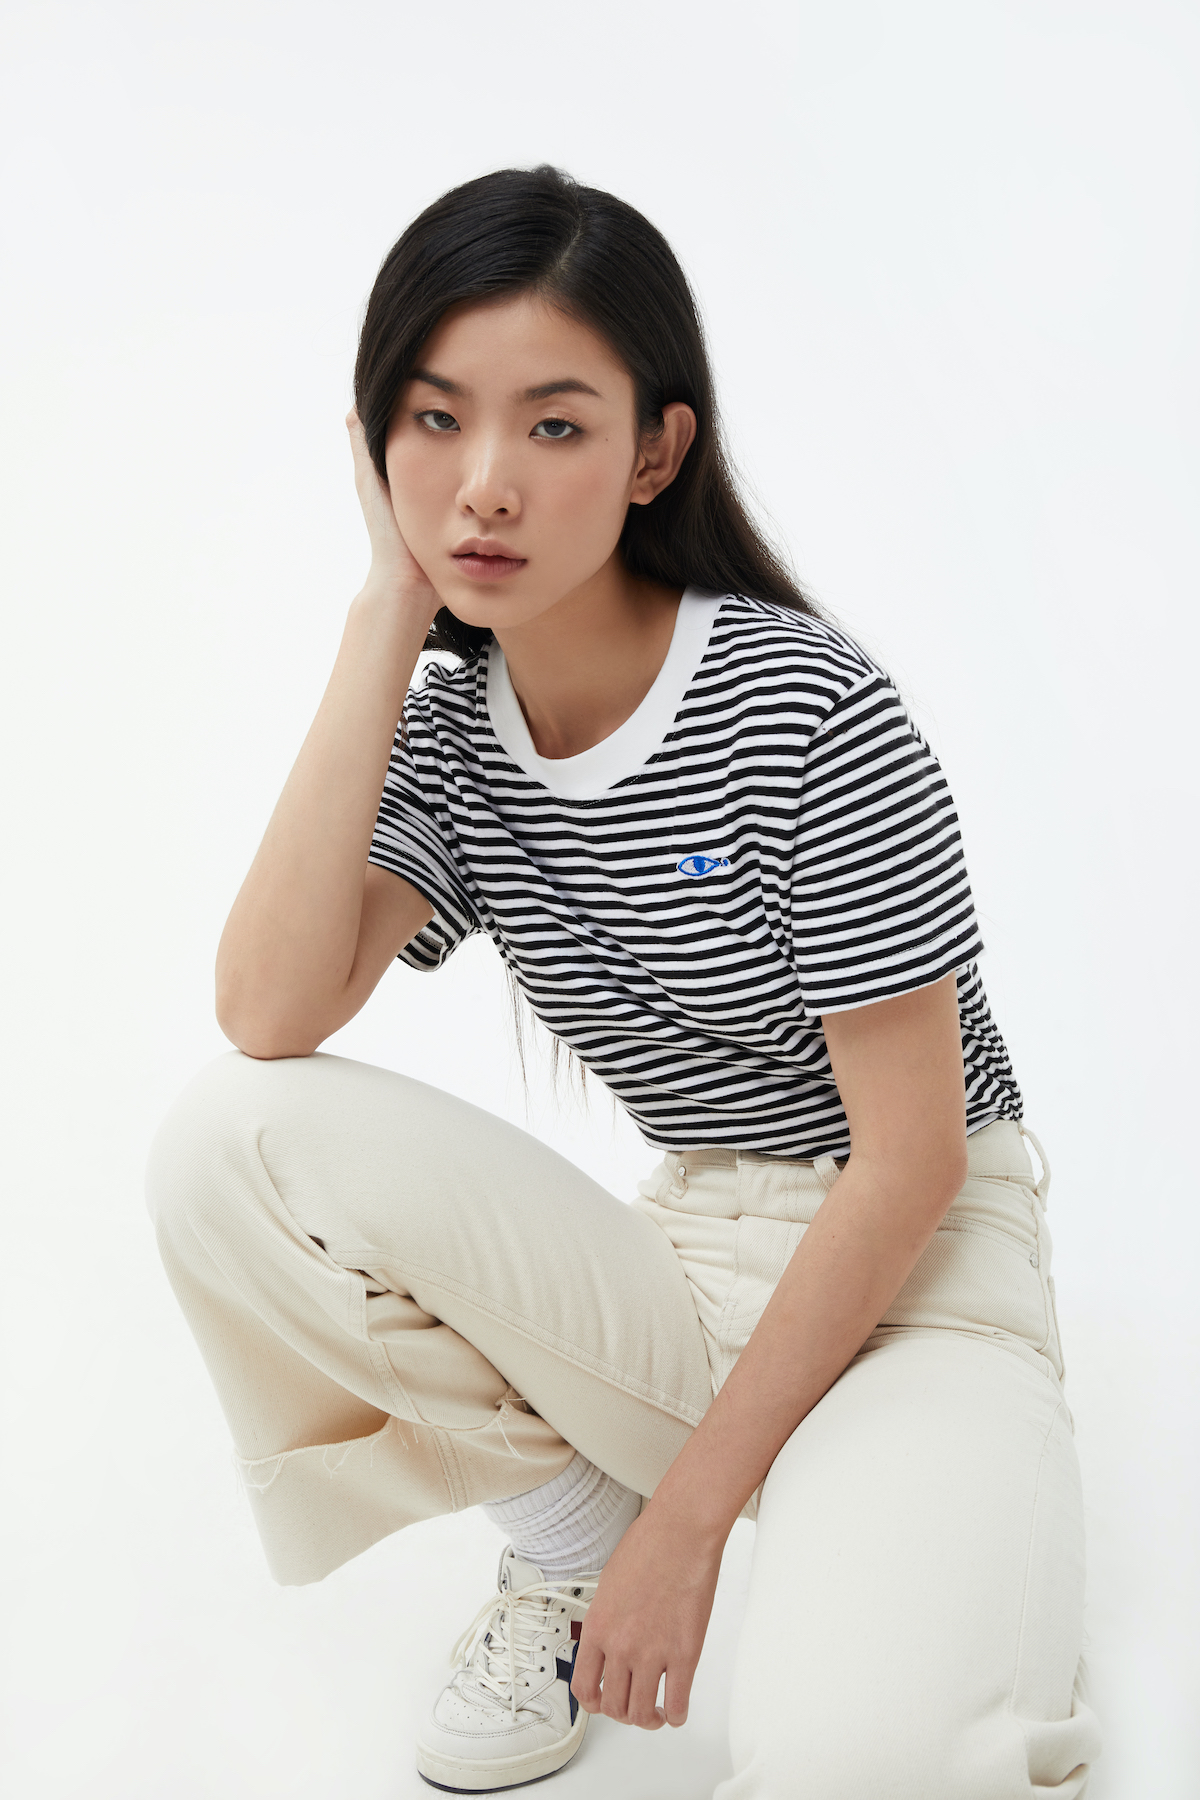 TheBlueTshirt - Áo Thun Tay Ngắn Hoạ Tiết Sọc Trắng Đen - No.4 Short Sleeve T - Black and White Stripe